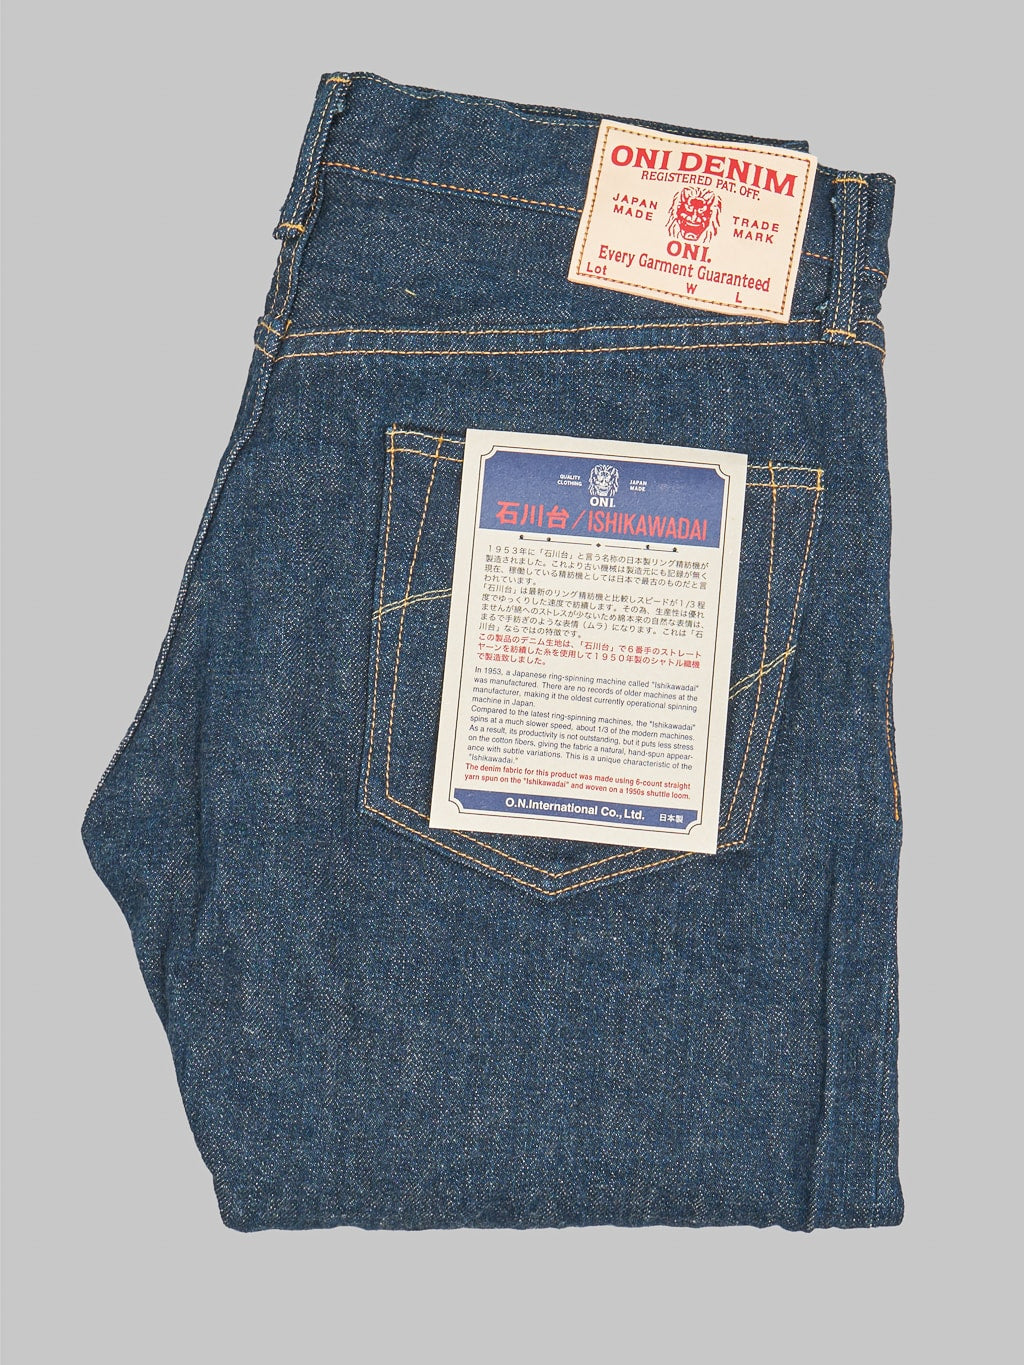 ONI Denim 246 Ishikawadai 15oz Neat Straight Jeans made in japan